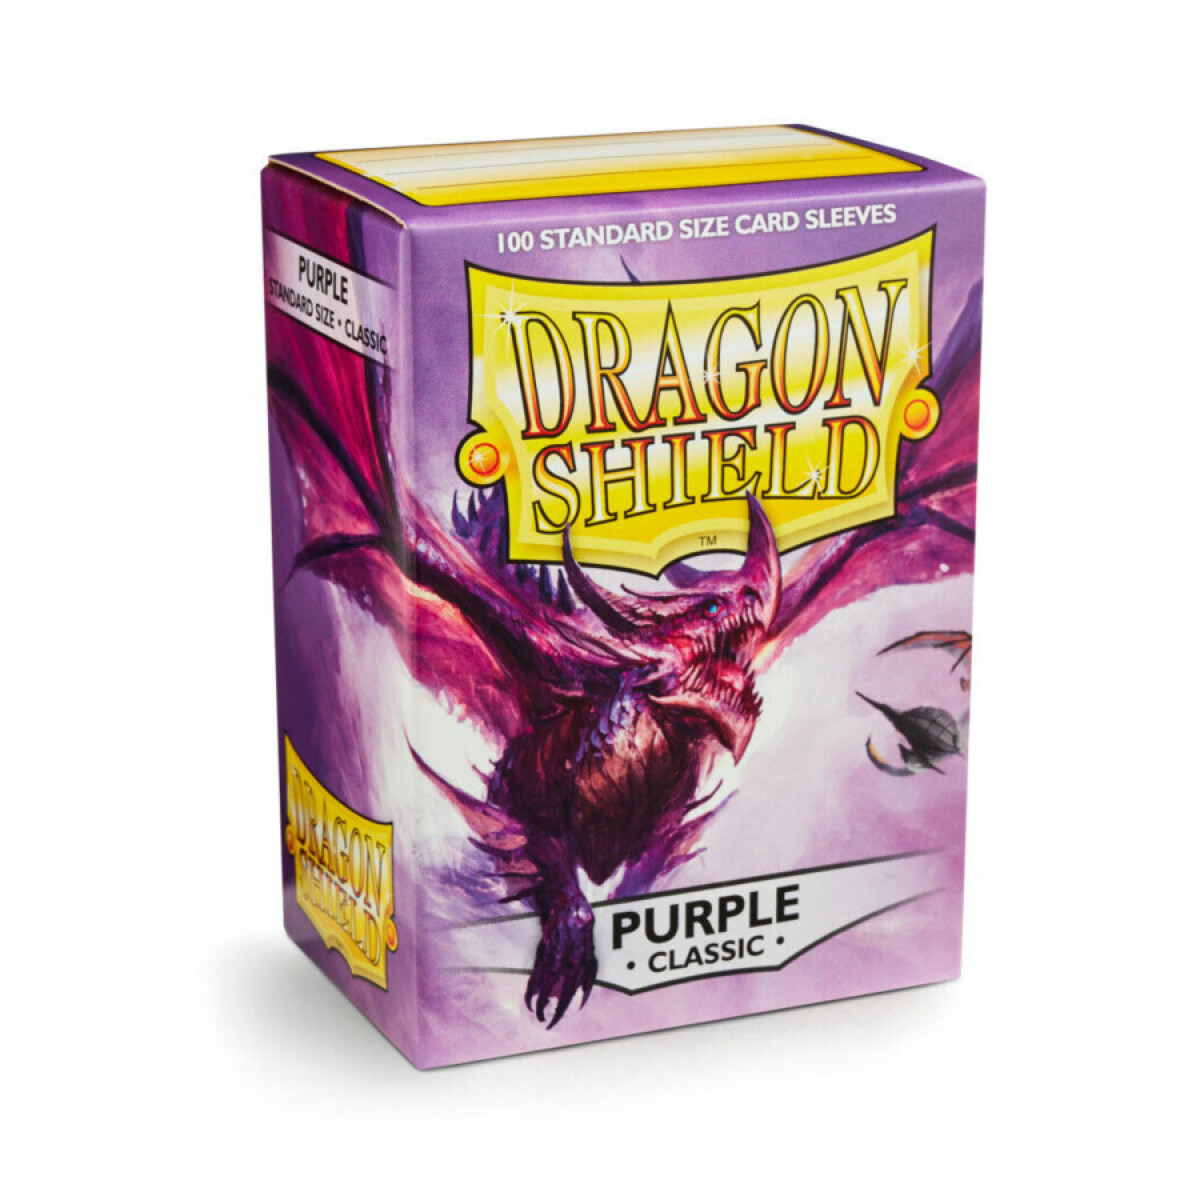 Dragon Shield Classic Purple 100 Sleeves 